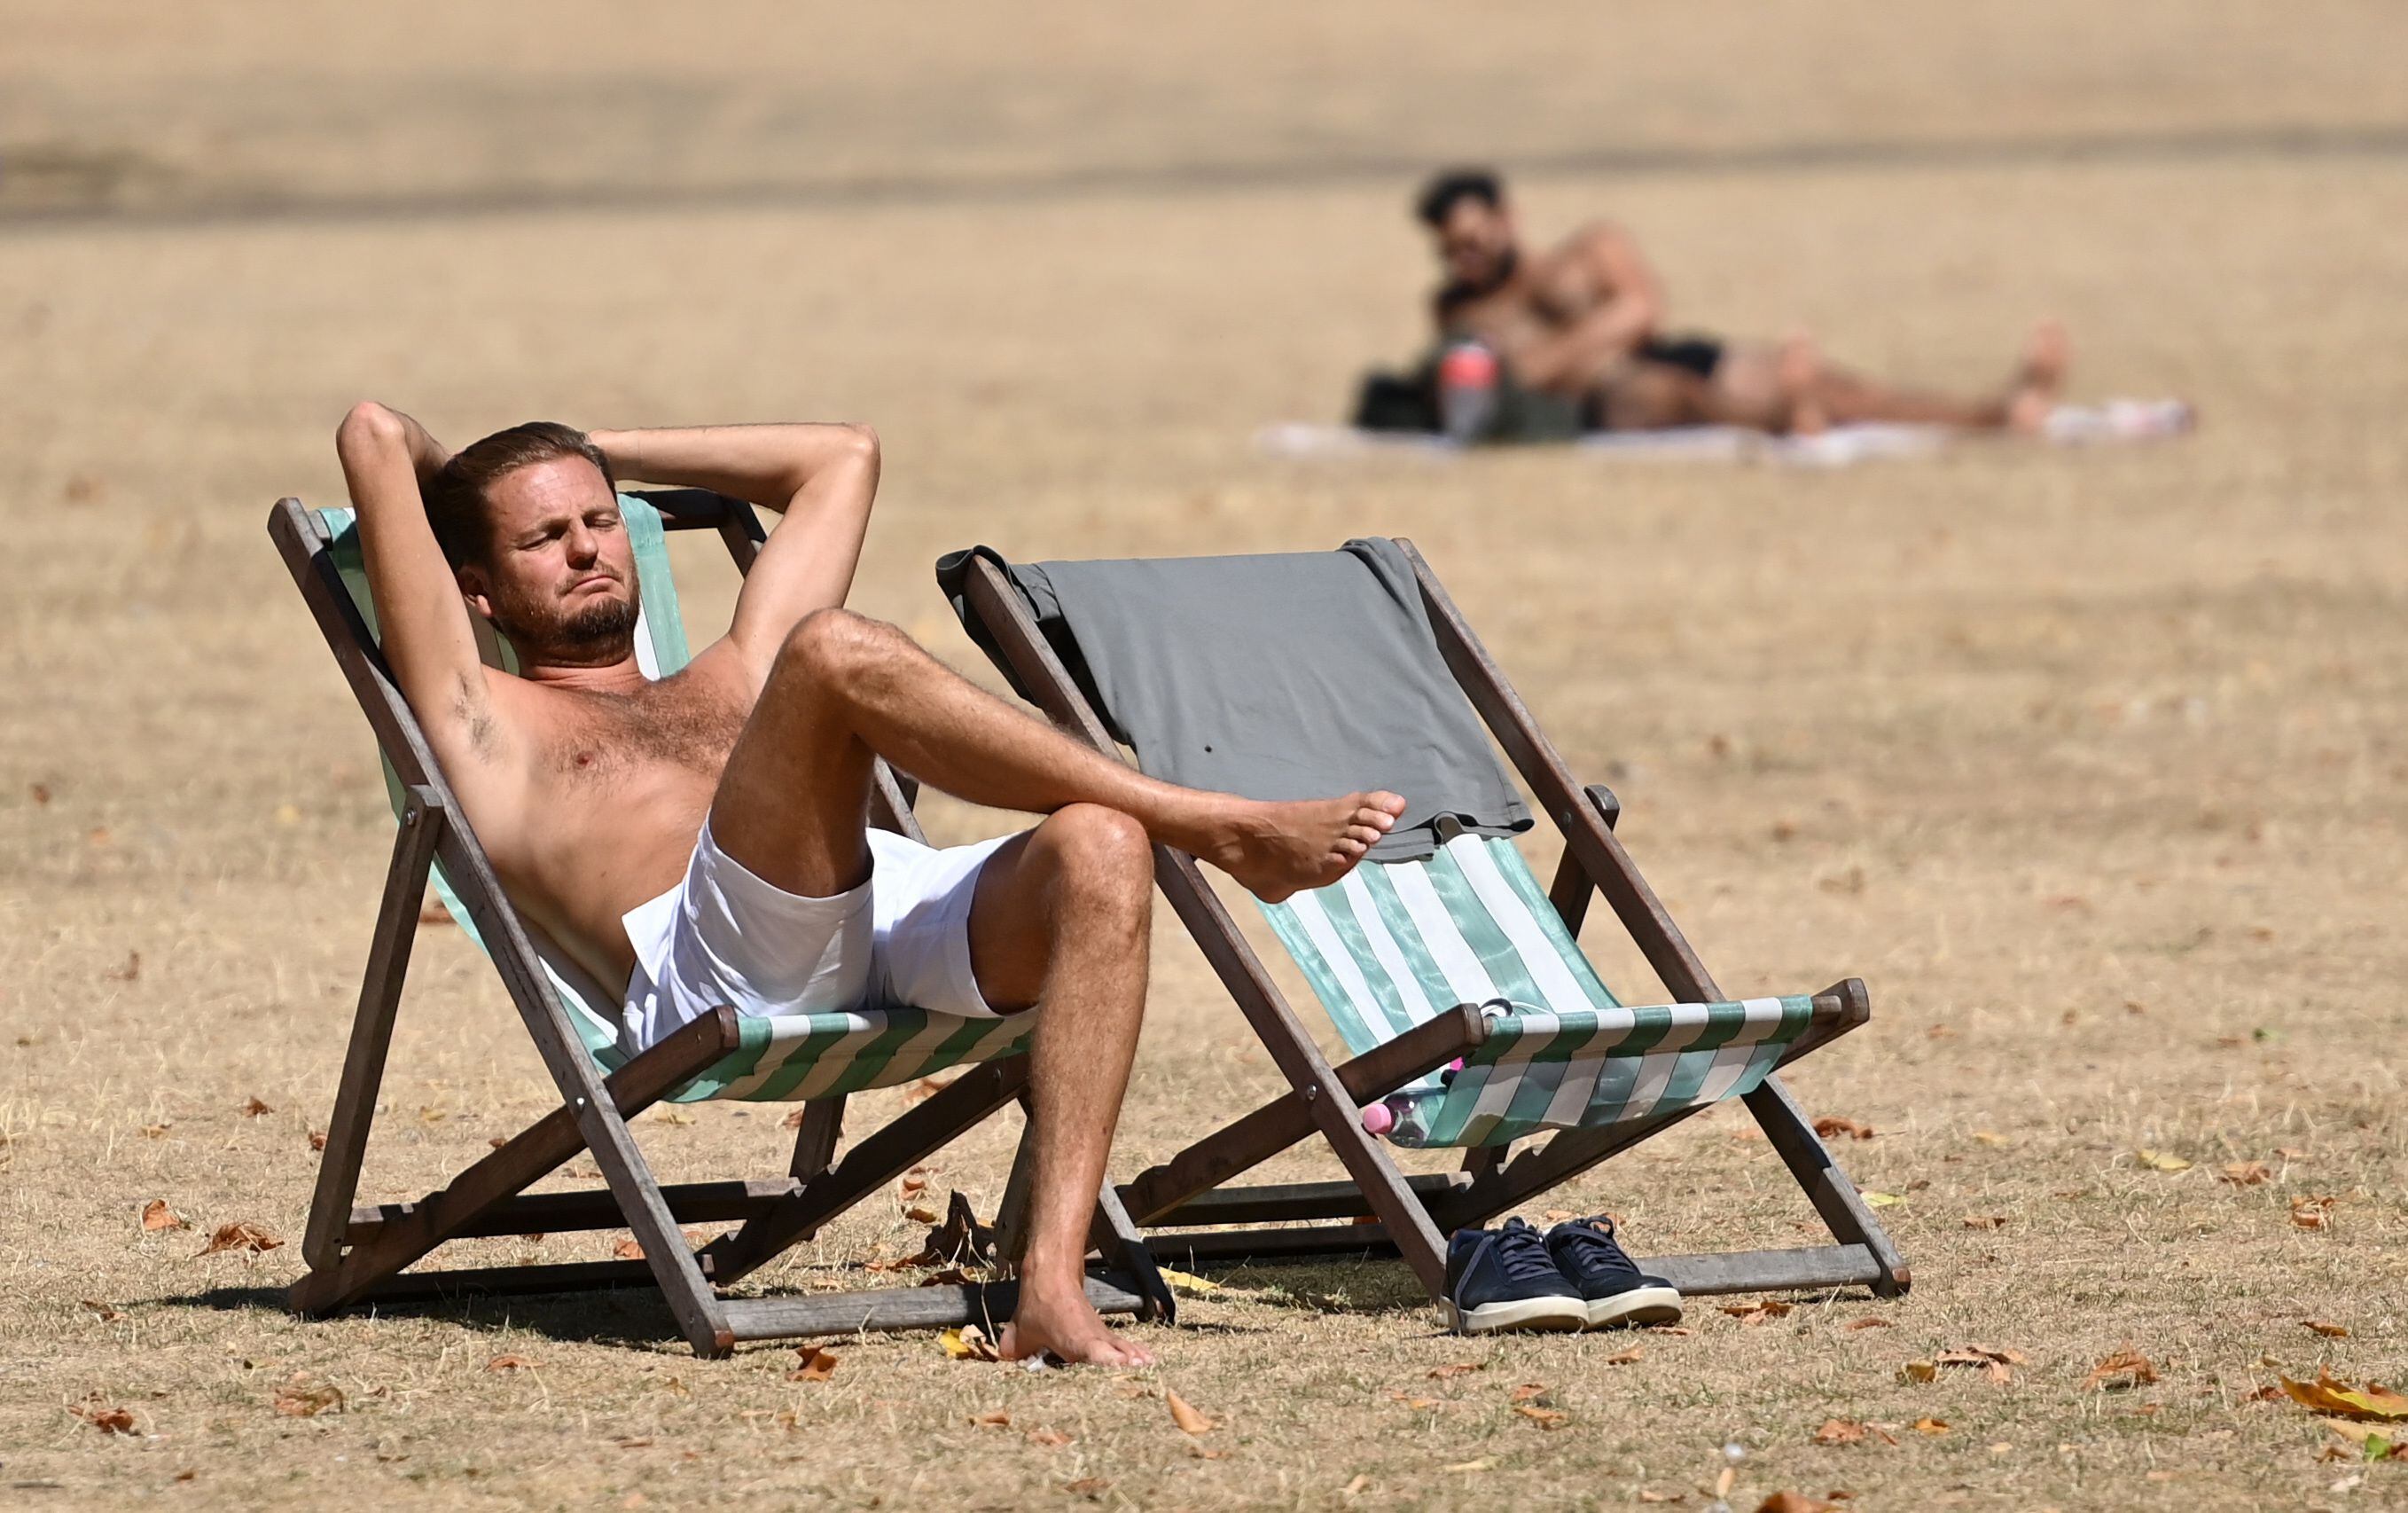 Personas disfrutan del clima cálido en St. James's Park en Londres, Gran Bretaña, el 9 de agosto de 2022. EFE